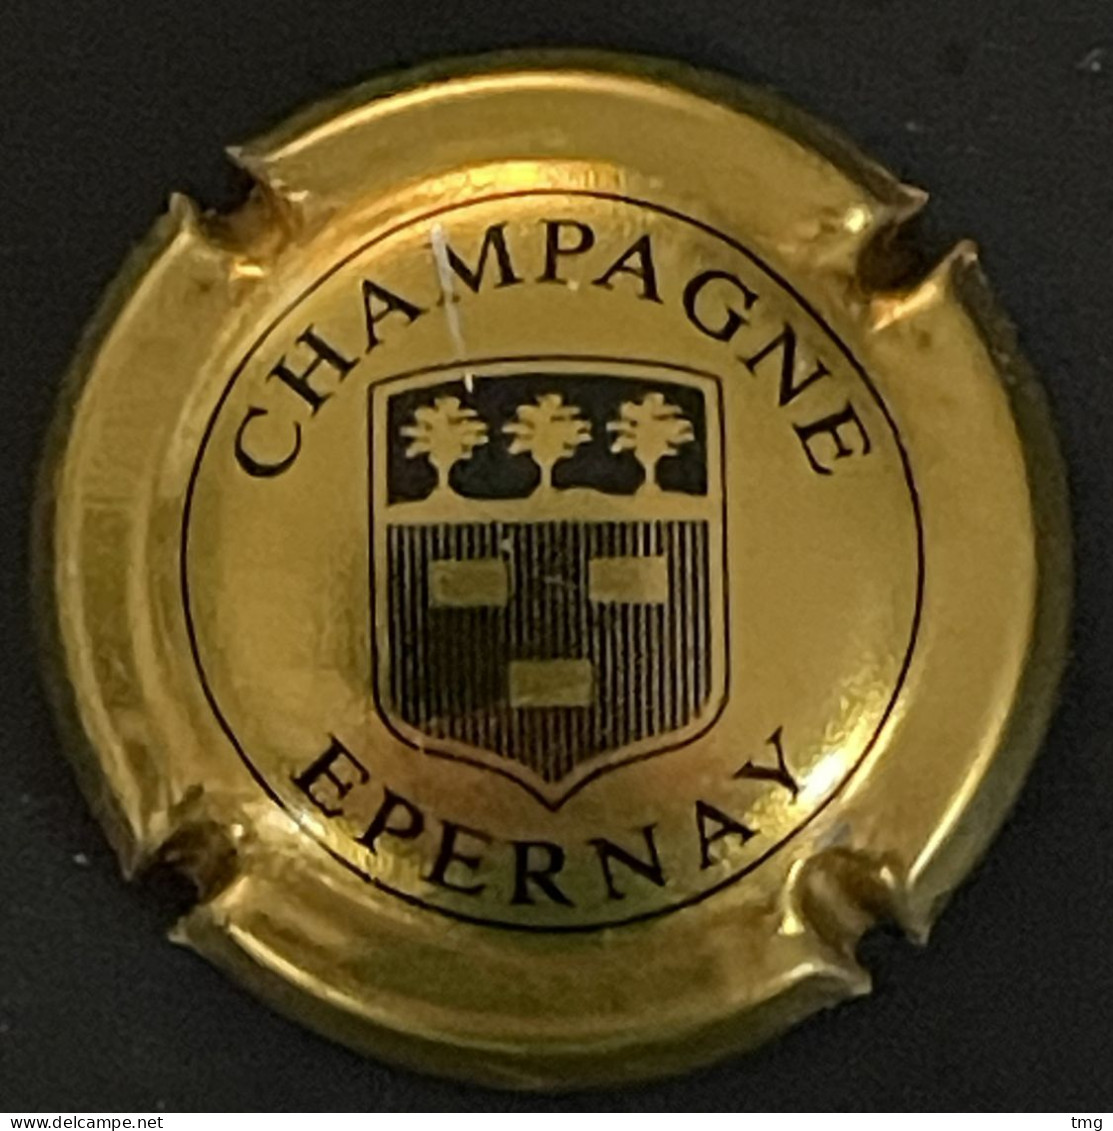 291 - 12 - Epernay Générique, écusson Or Et Noir (côte 1,5 €) Capsule De Champagne - Epernay